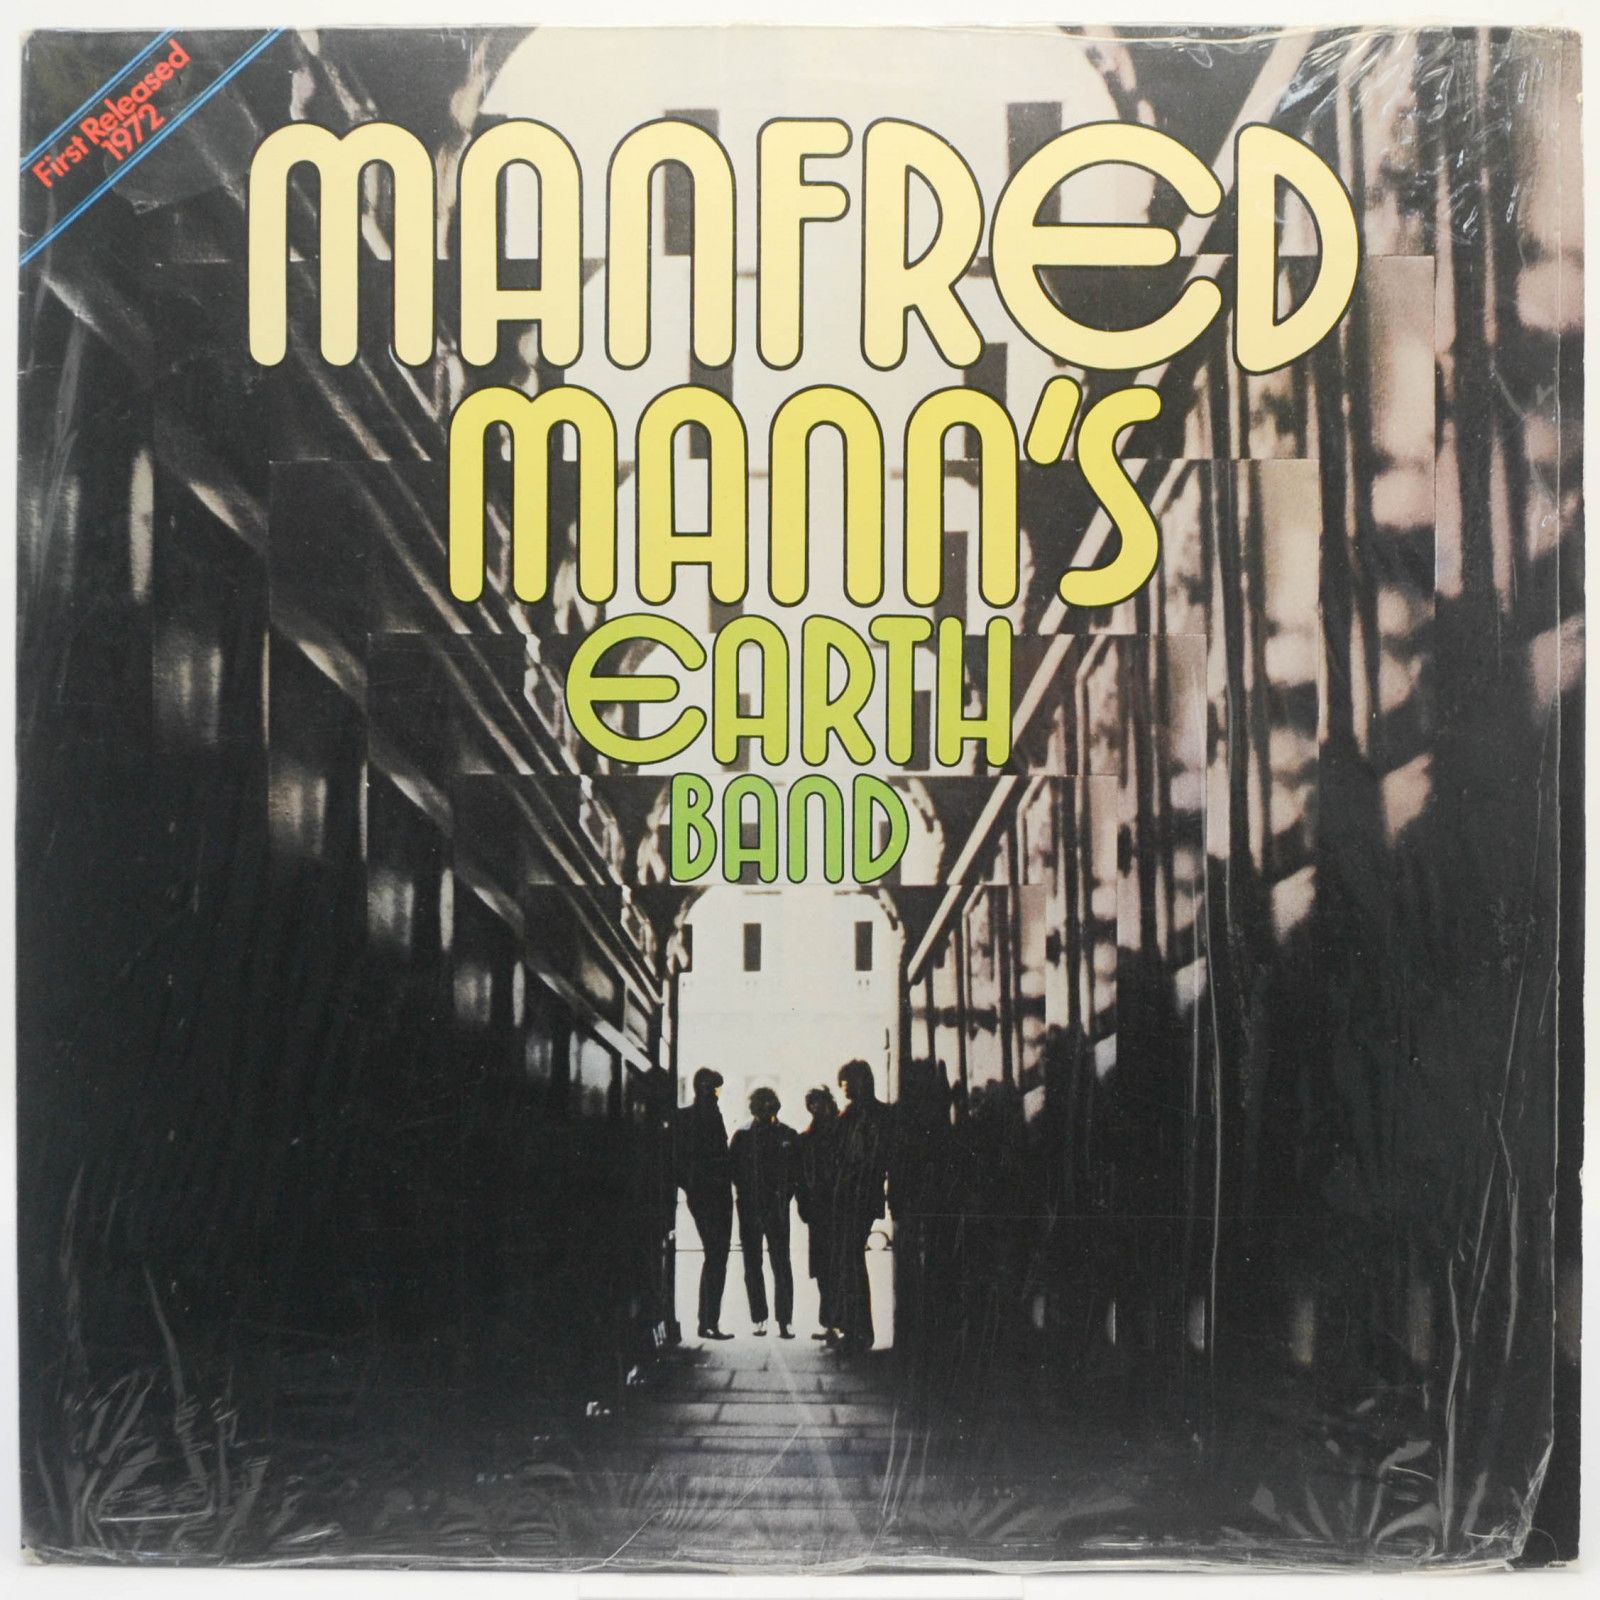 Manfred Mann's Earth Band — Manfred Mann's Earth Band, 1972